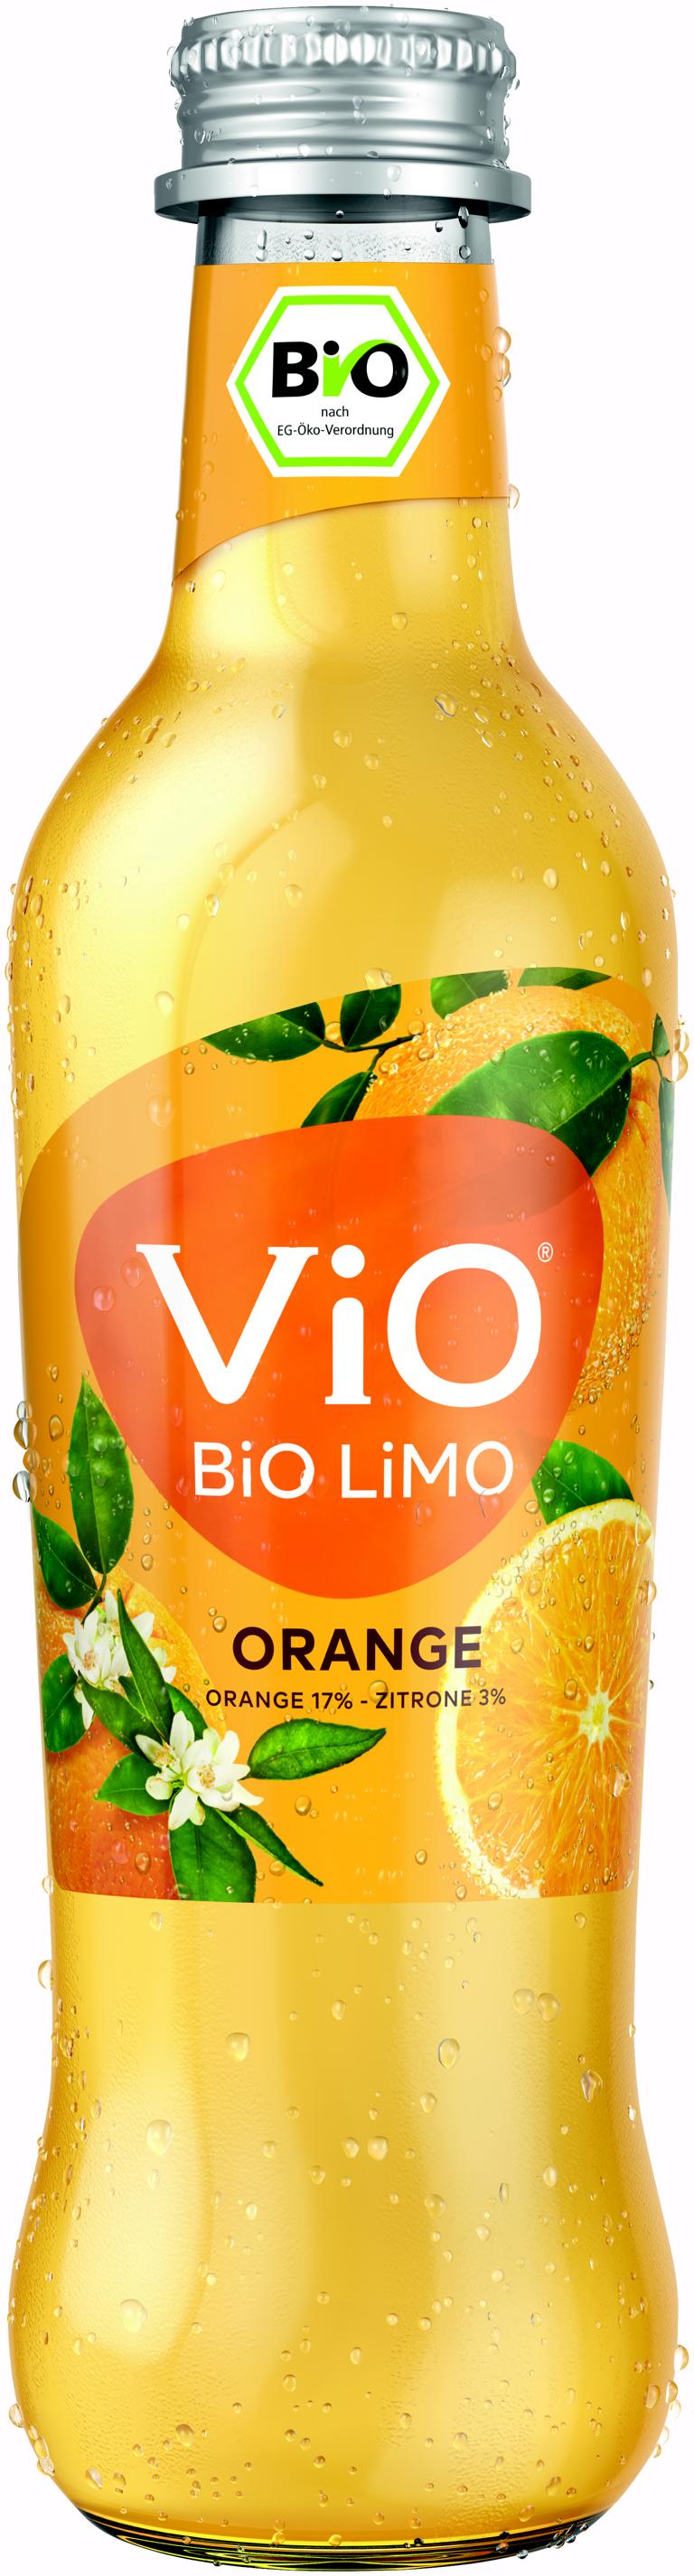 Vio Bio Limo Orange 24x0,3 l